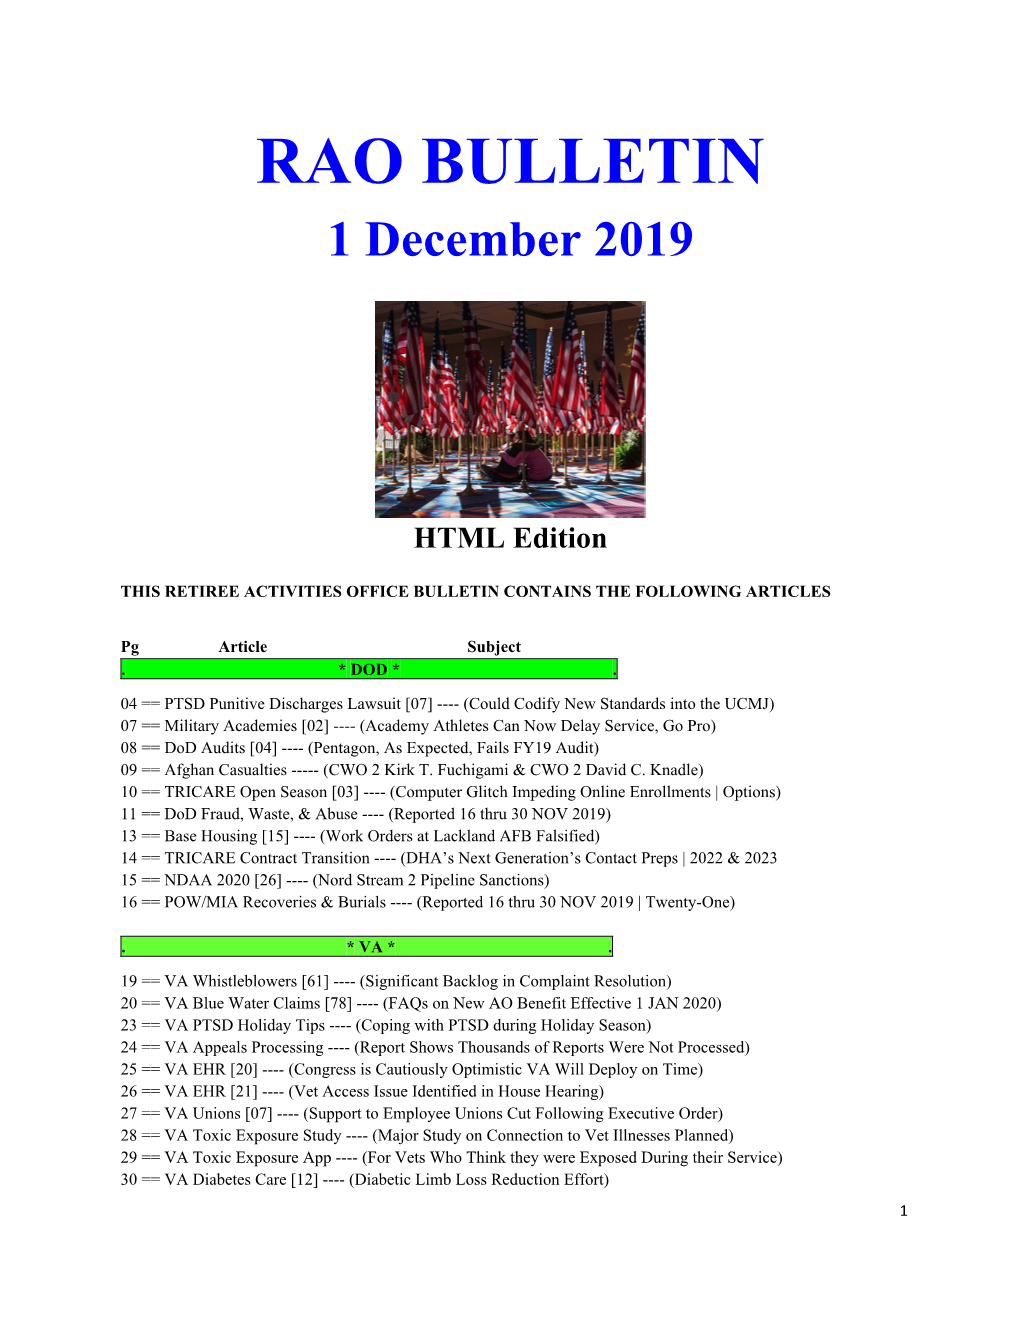 RAO BULLETIN 1 December 2019